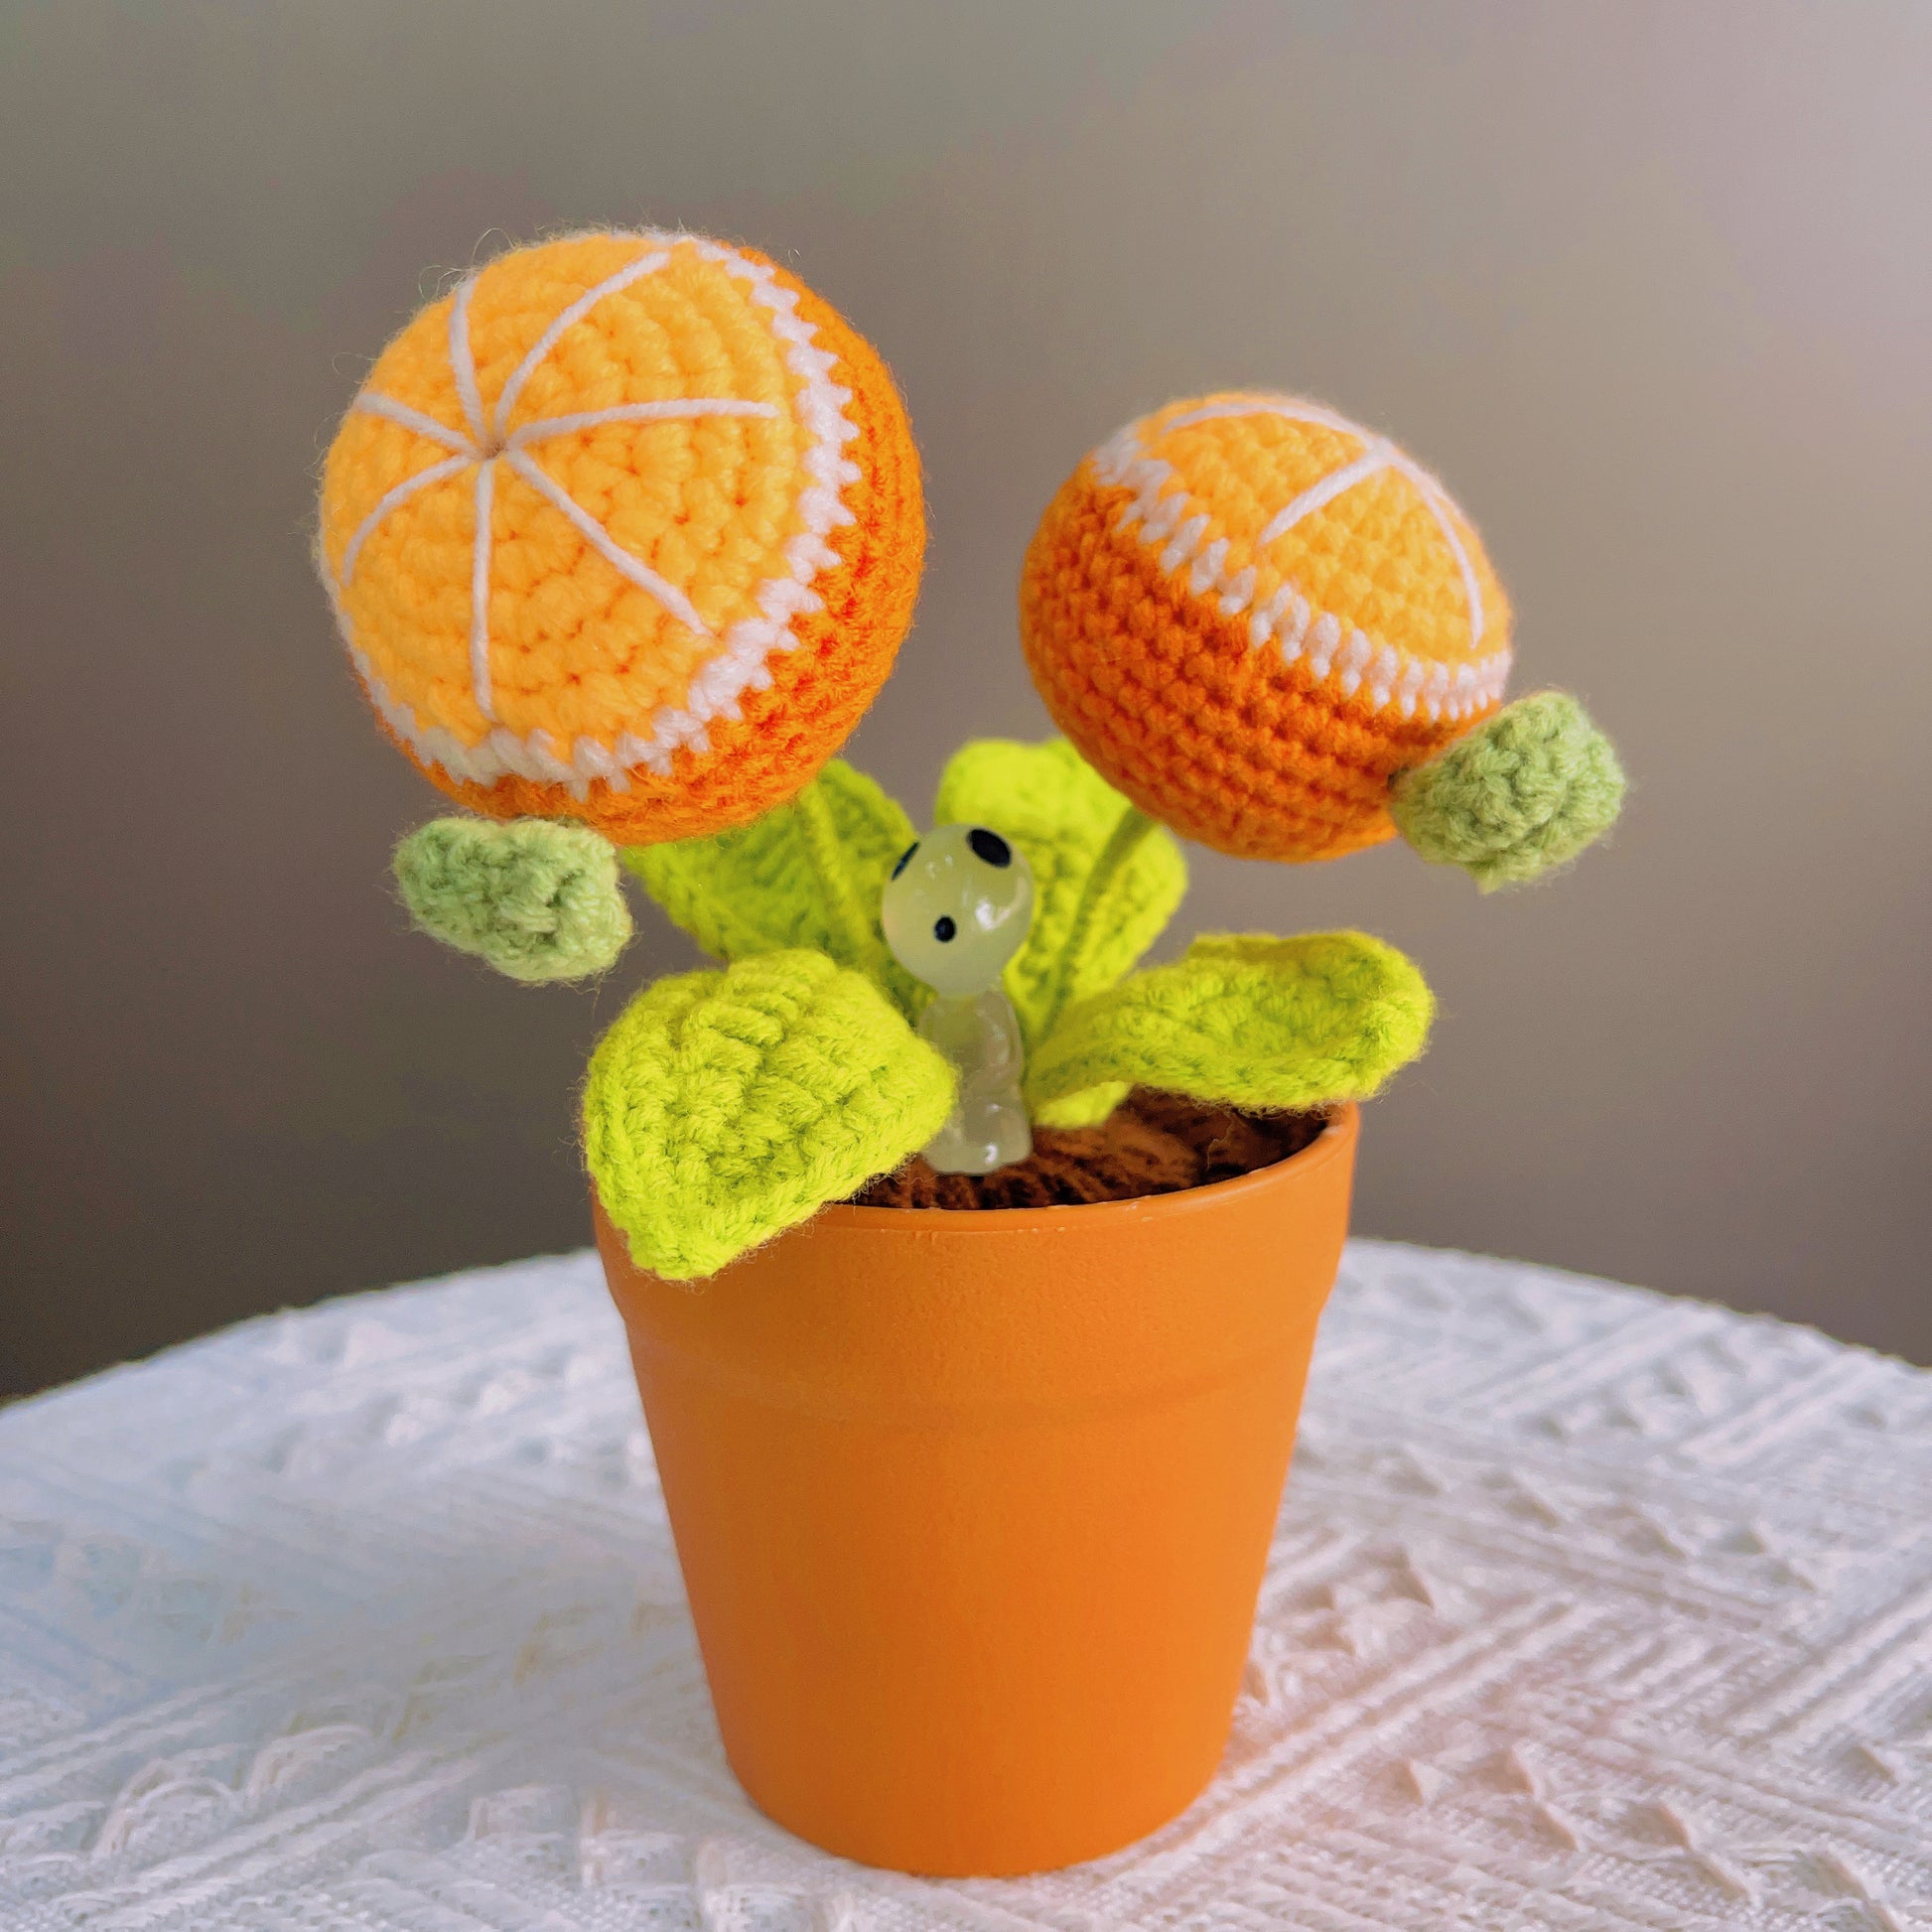 Handgefertigte gehäkelte Mandarinen-Topfpflanze – niedliche